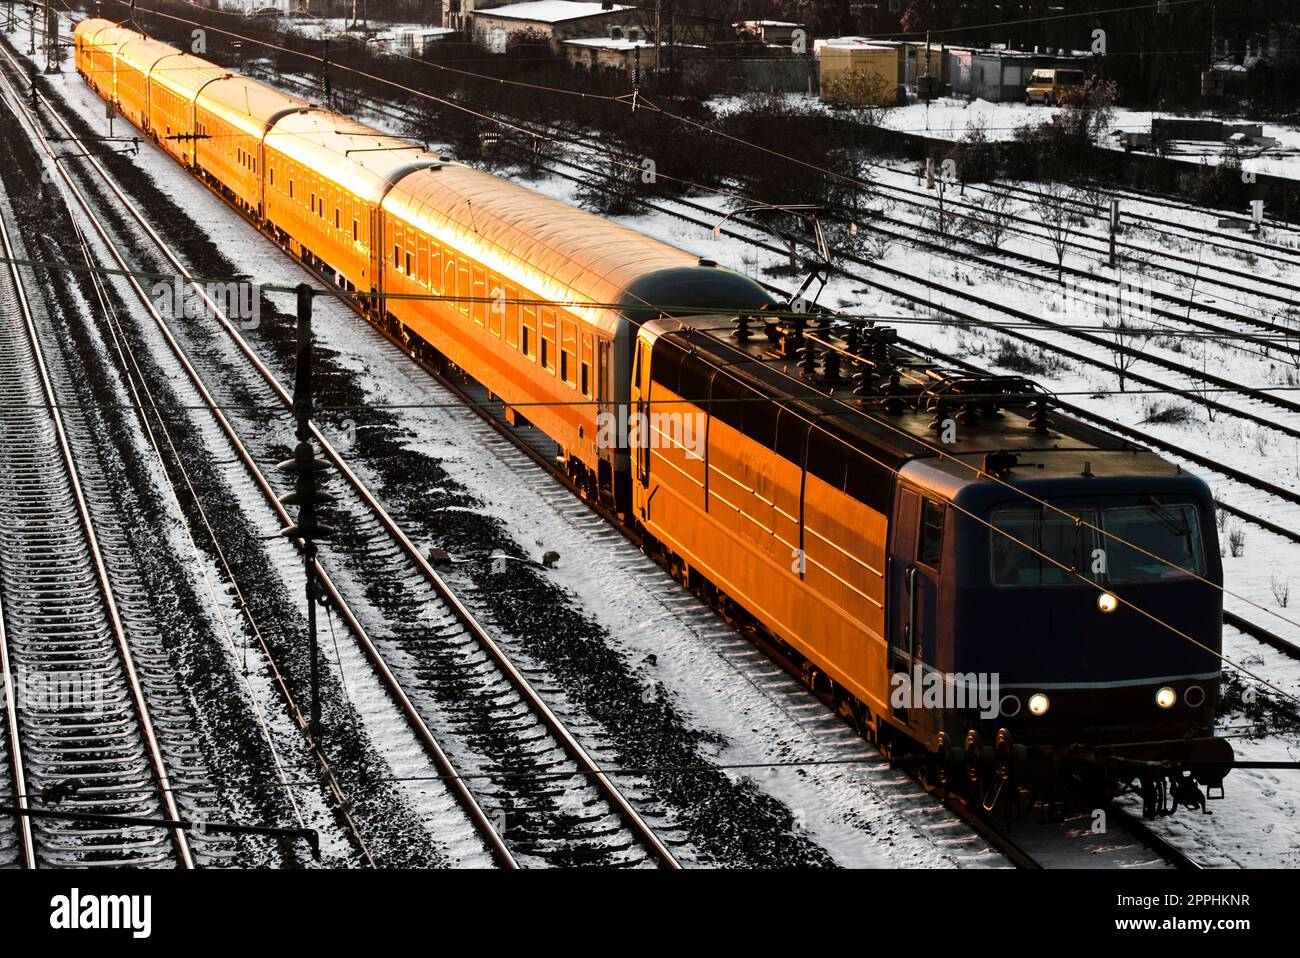 La locomotiva e le carrozze di un treno passeggeri viaggiano diagonalmente attraverso il quadro, illuminato di arancione dal tramonto o dal sole che sorge. Foto Stock